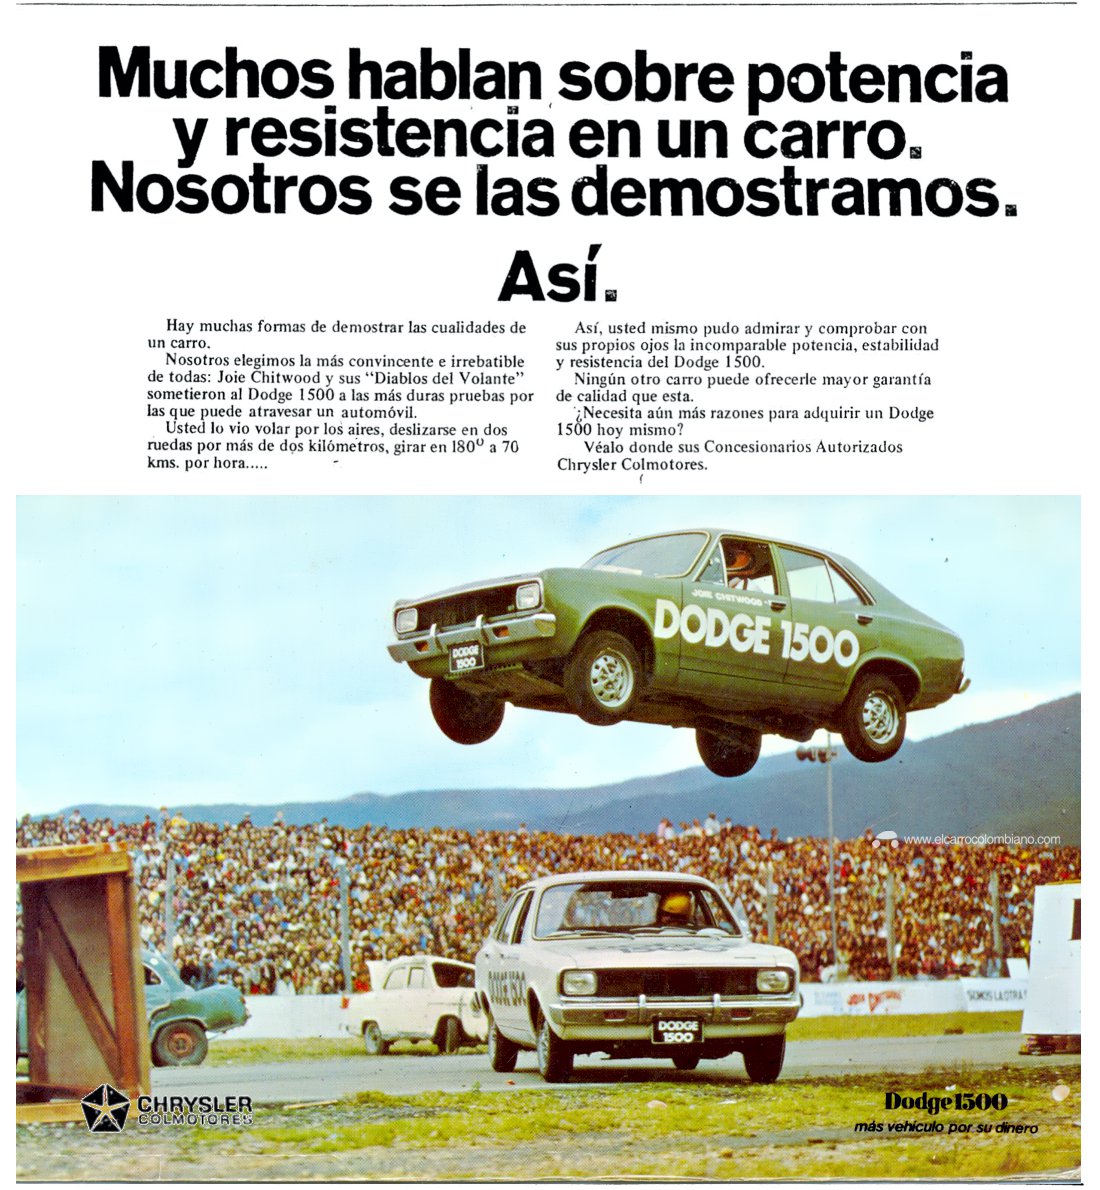 Dodge 1500 Publicidad en Colombia